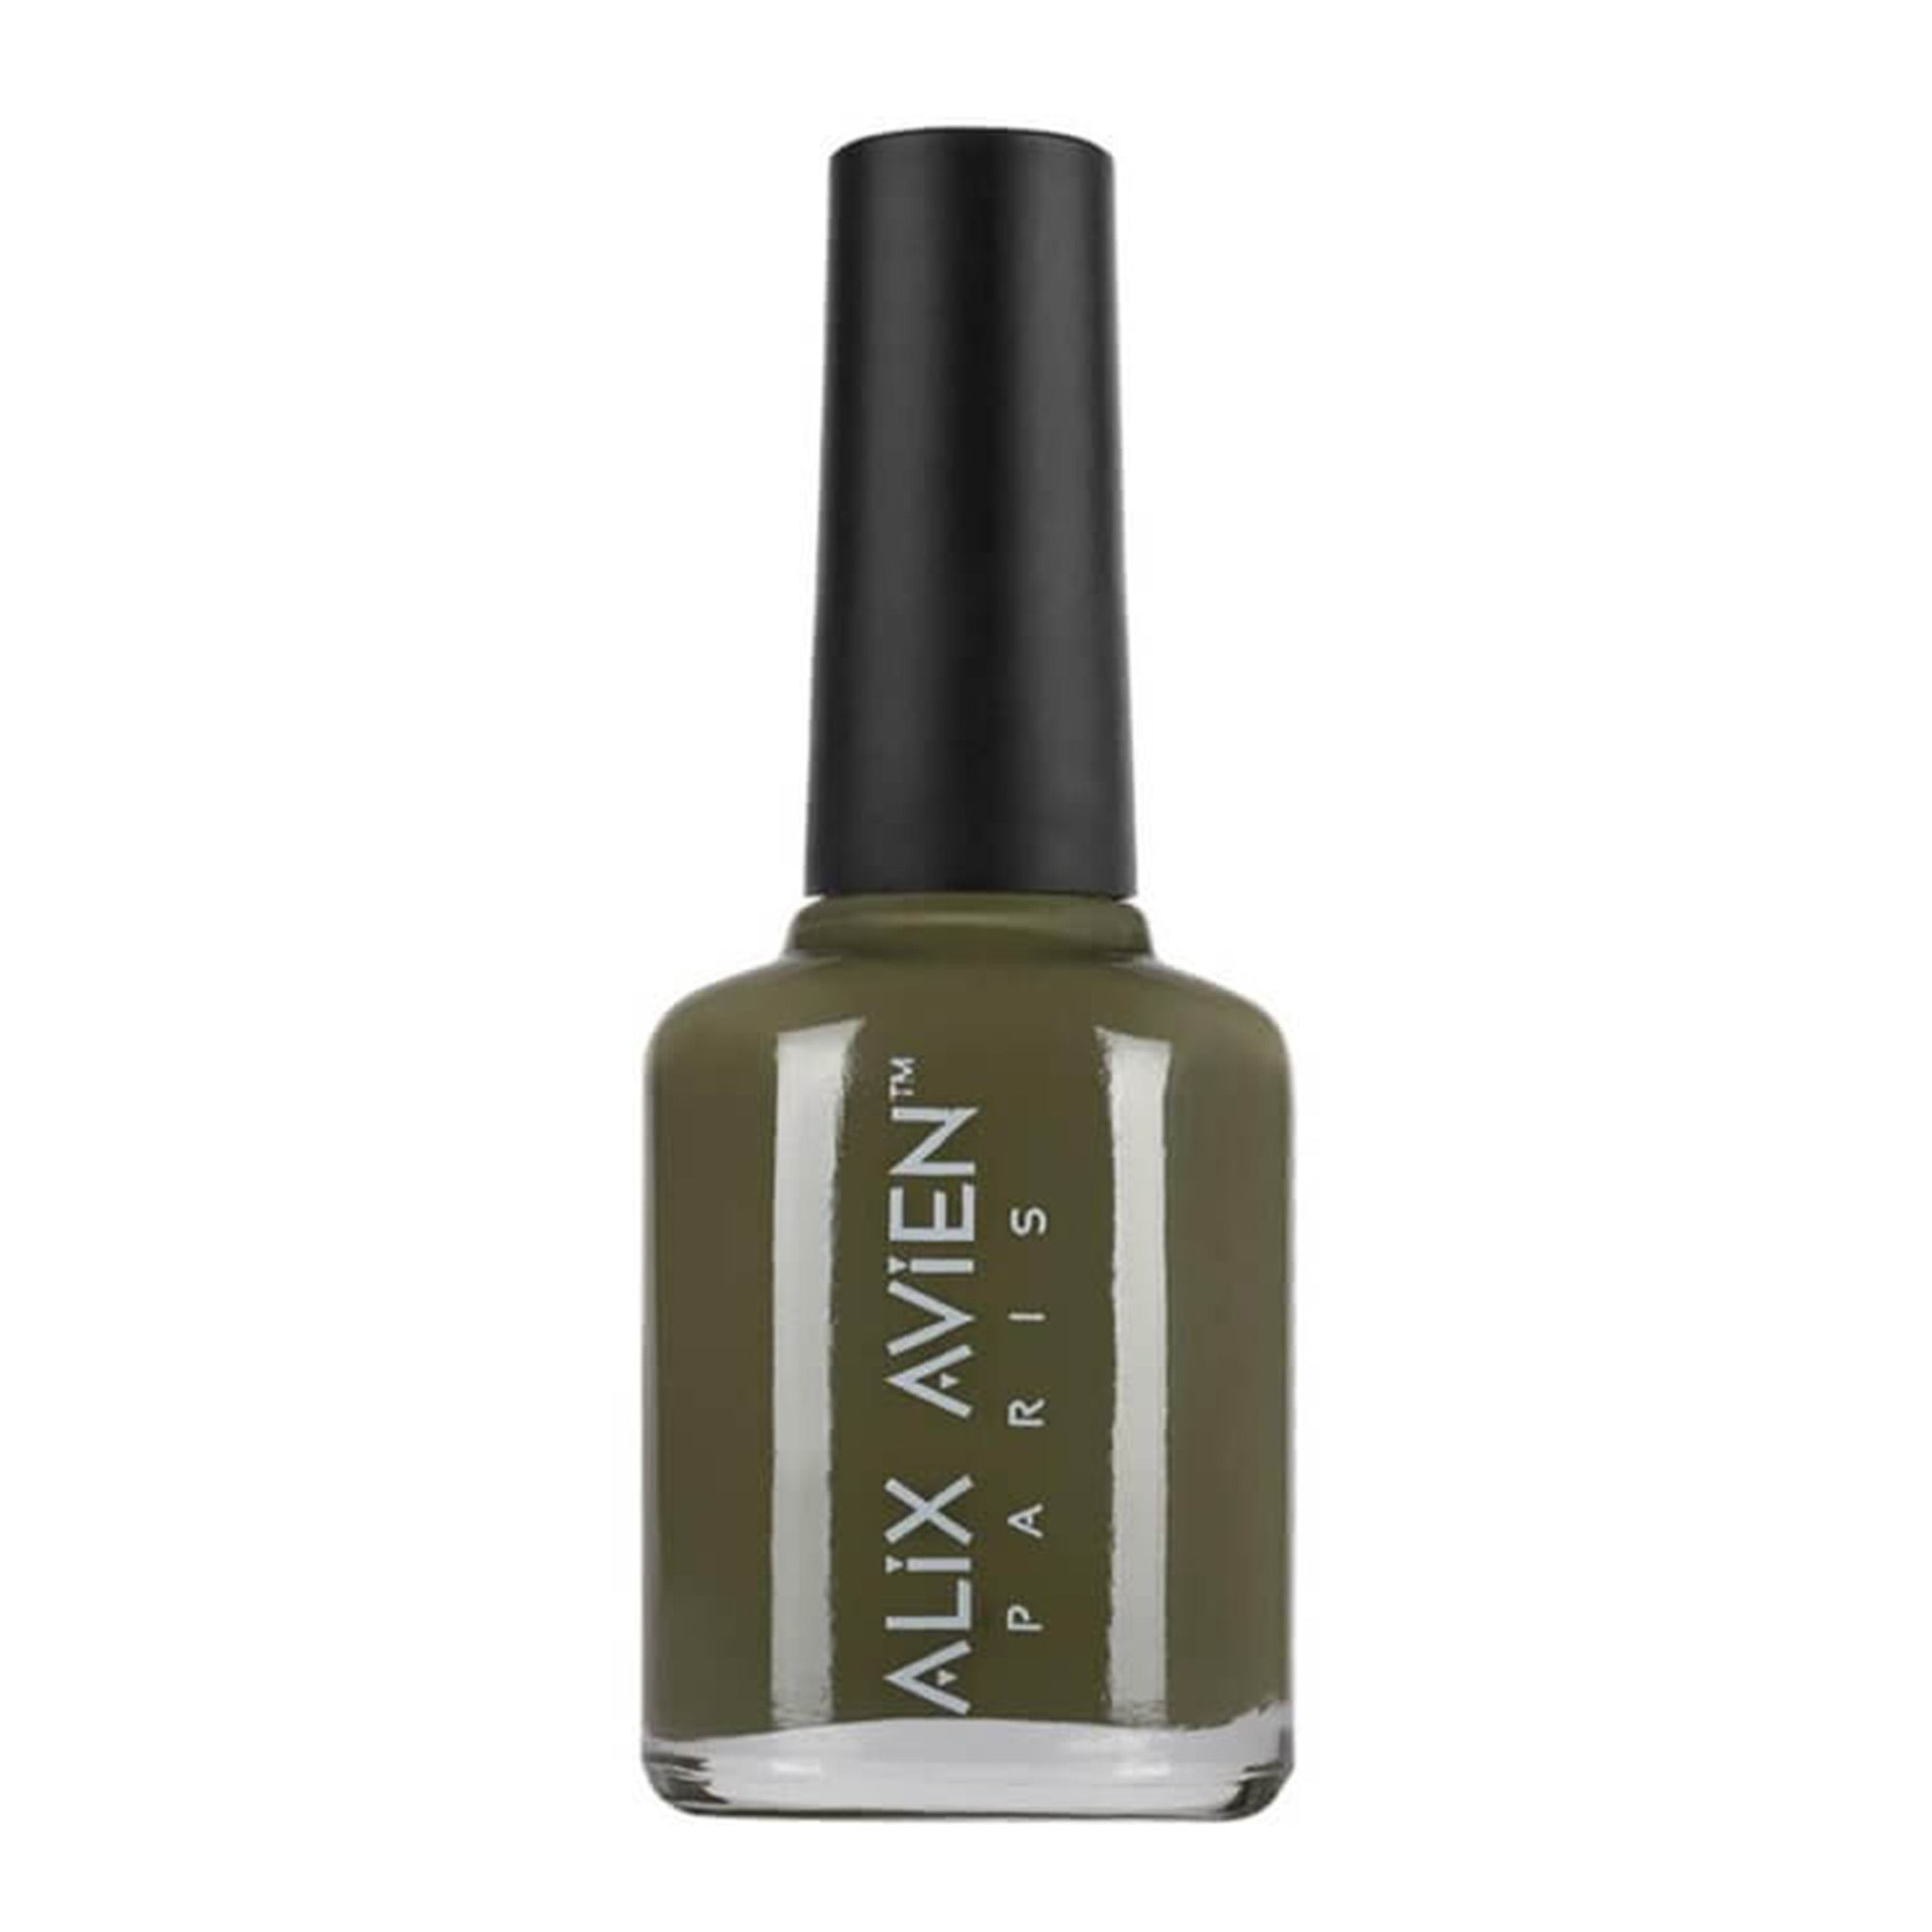 Alix Avien - Nail Polish No.44 (Army Green) - Eson Direct